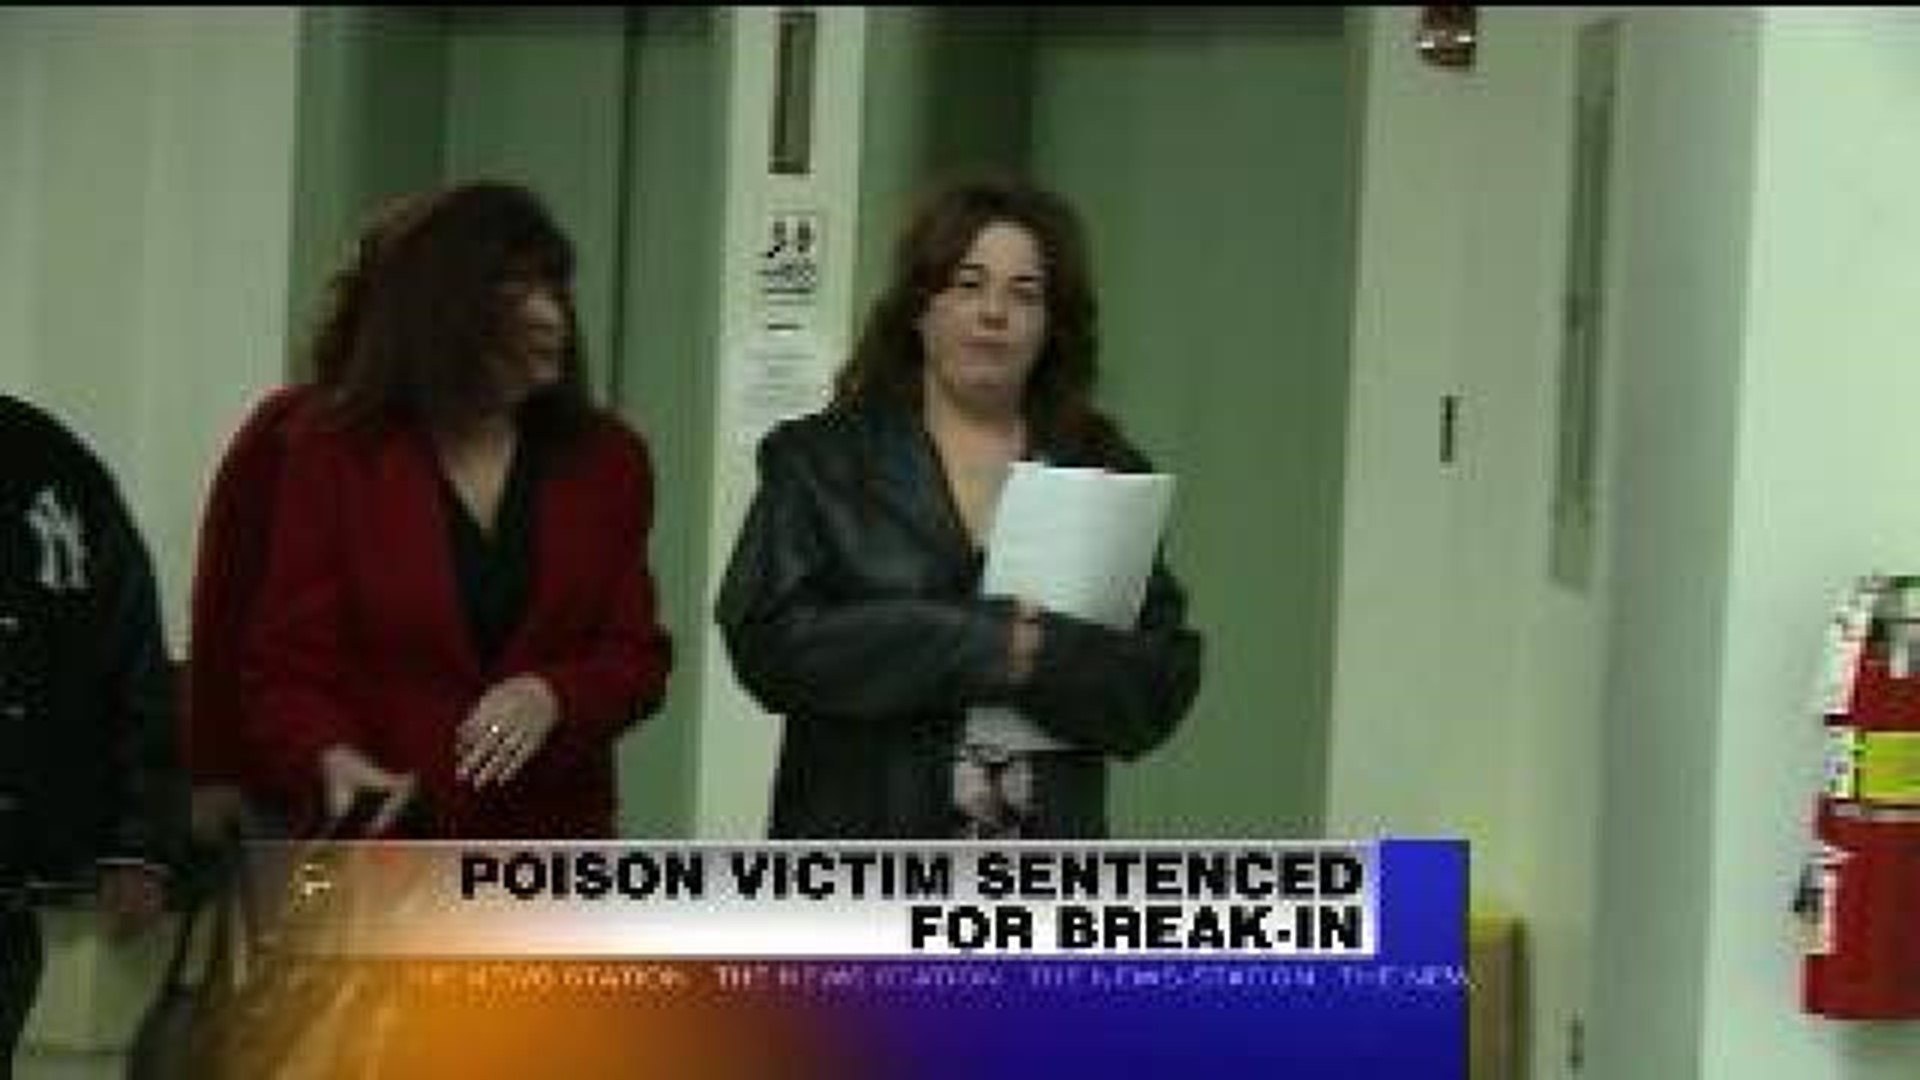 Poison Victim Sentenced for Break-in